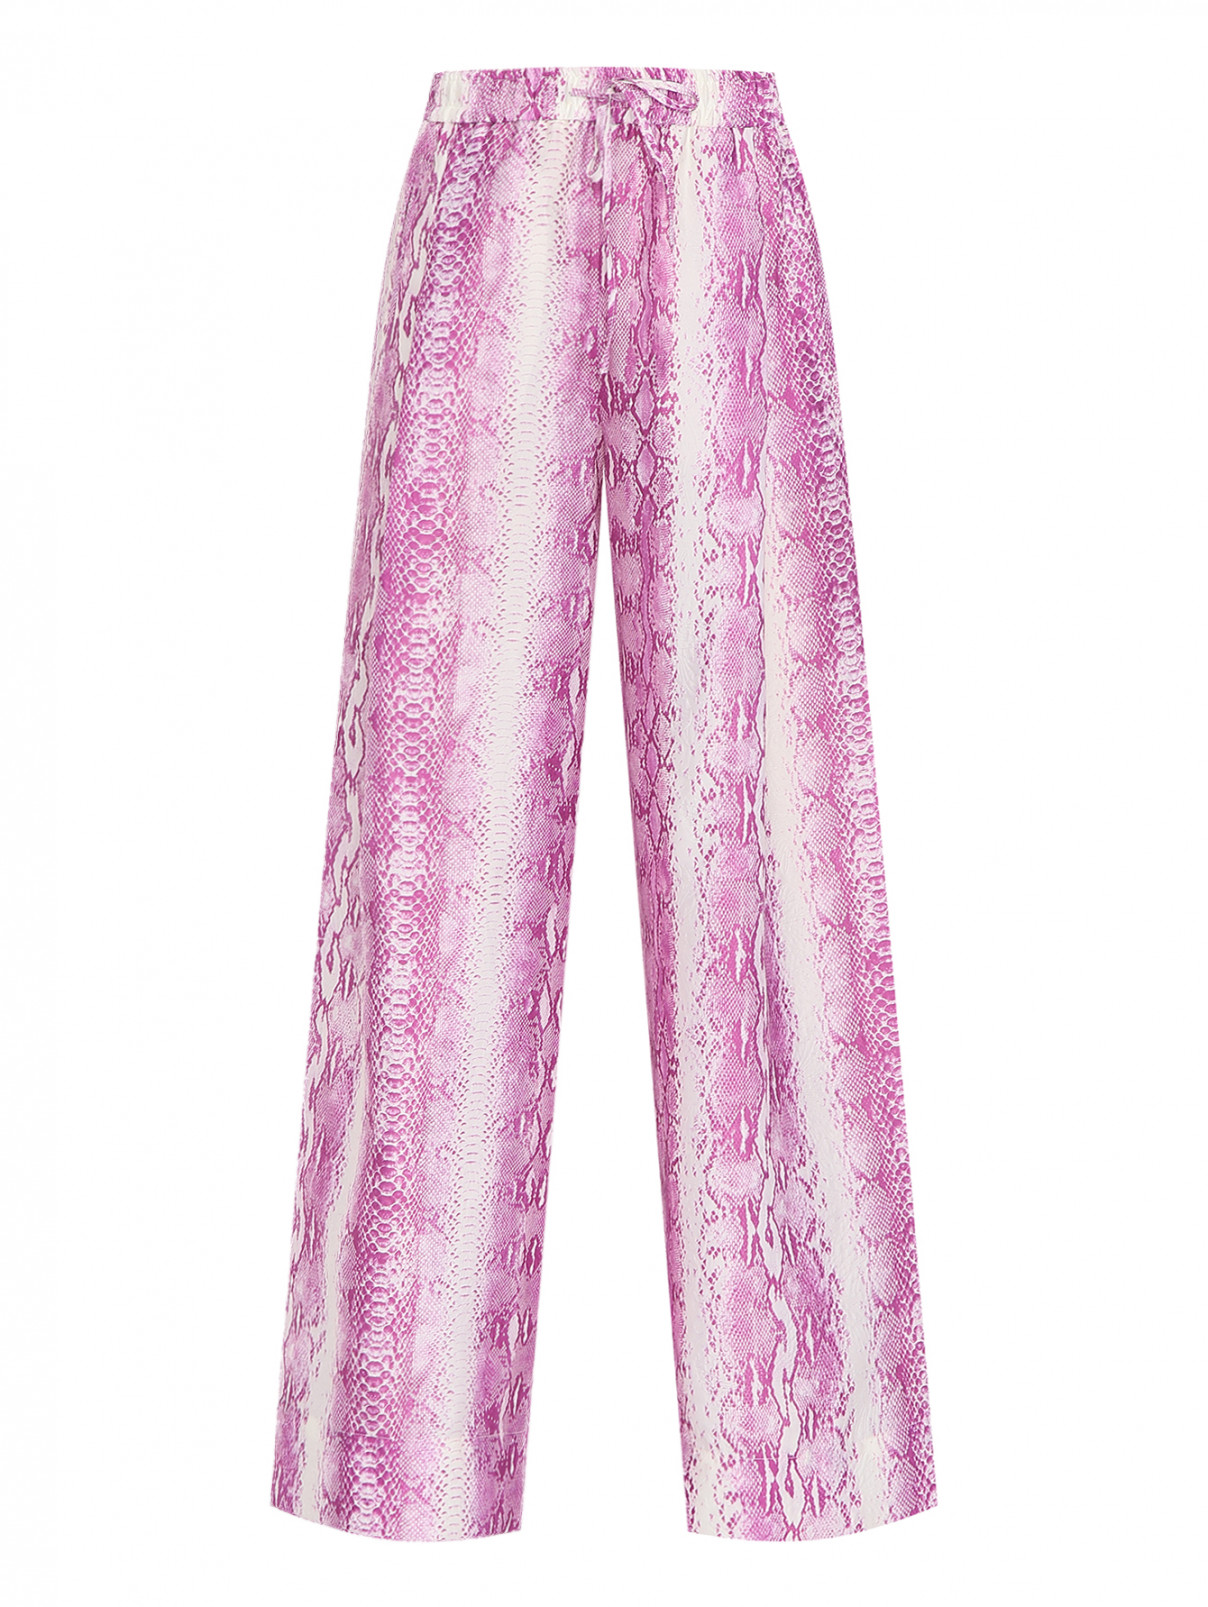 Широкие брюки на резинке с узором под питона Essentiel Antwerp  –  Общий вид  – Цвет:  Розовый